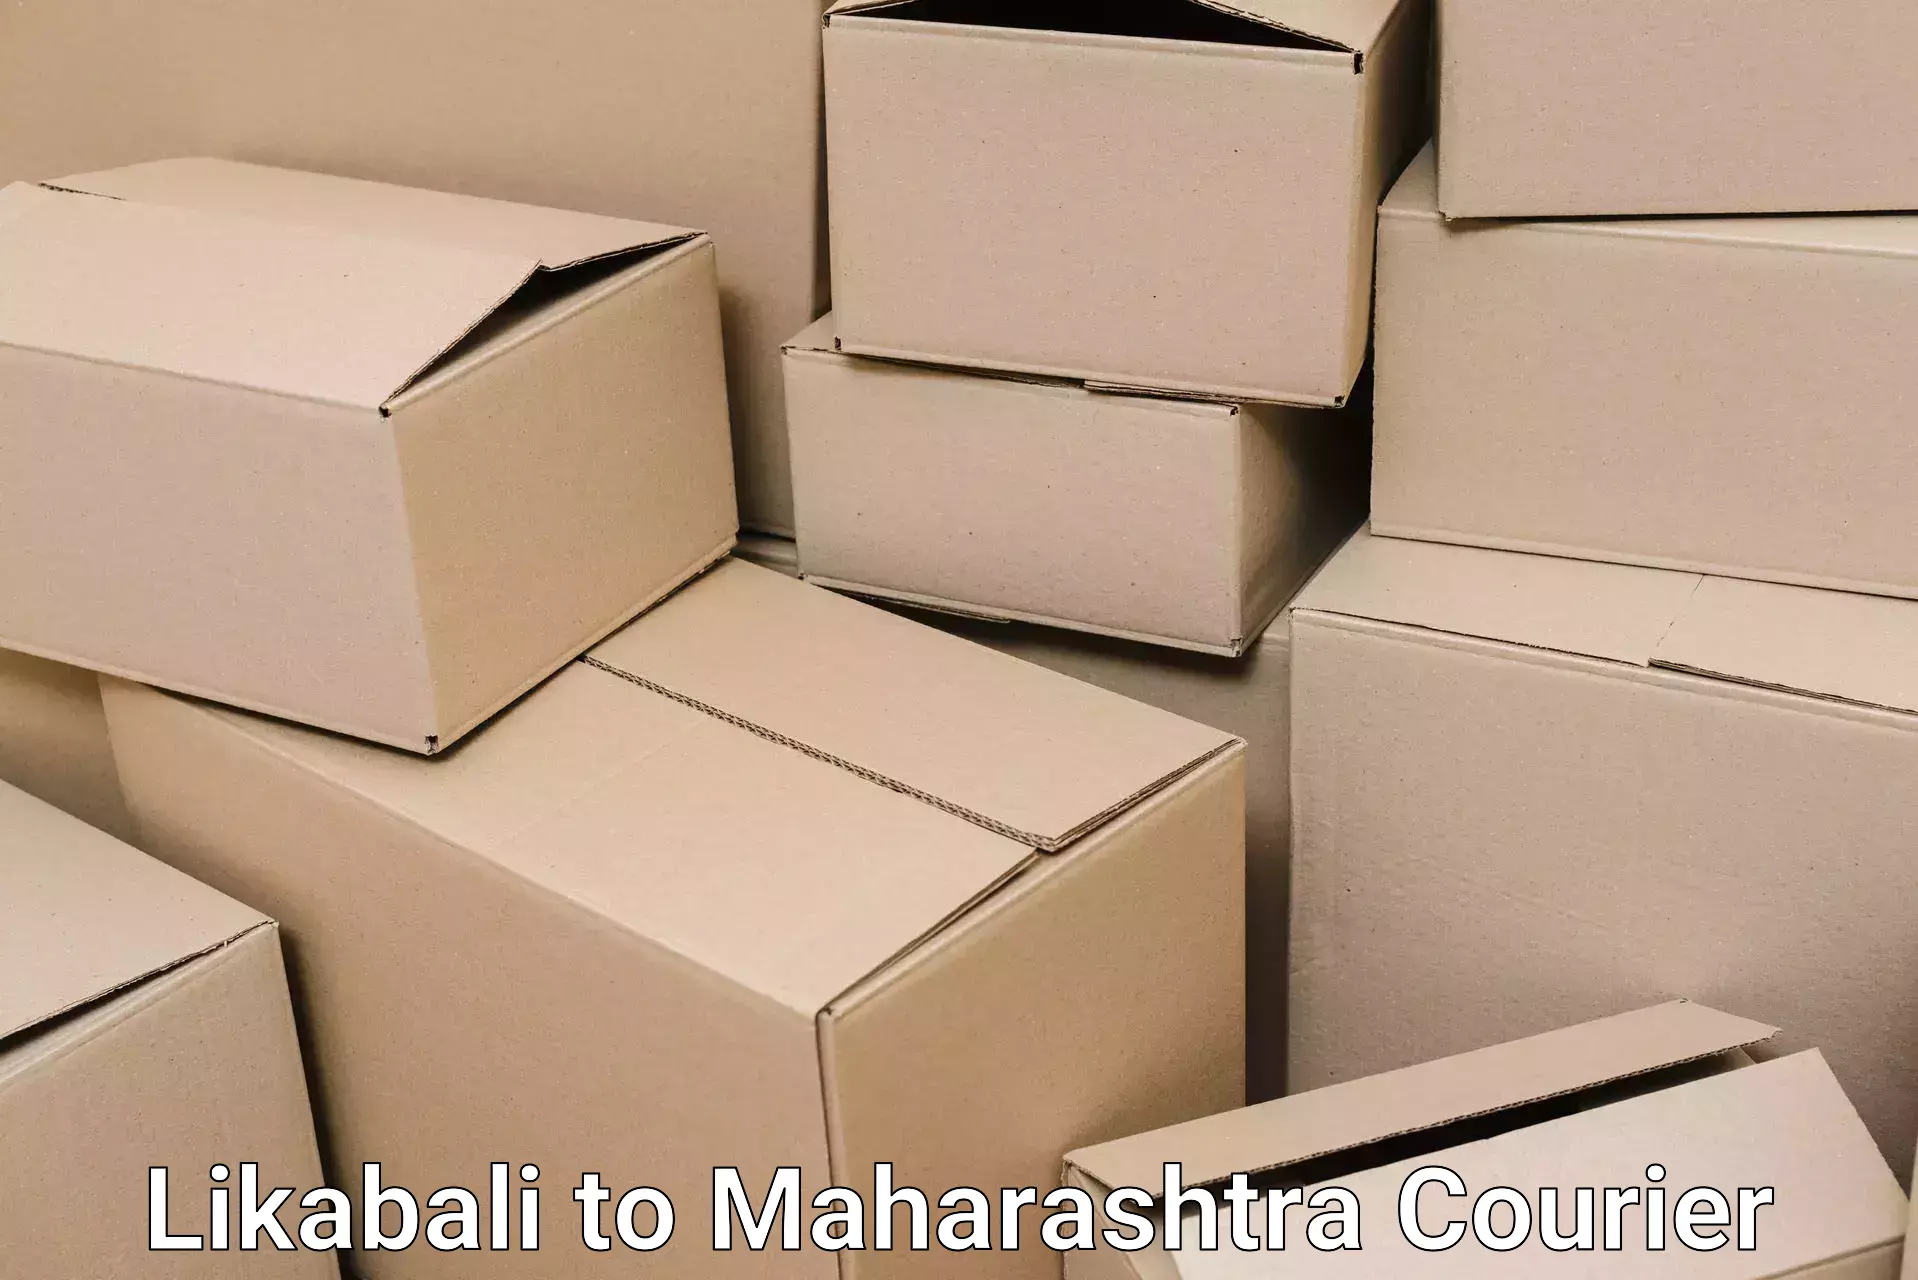 Home goods moving company Likabali to Maharashtra